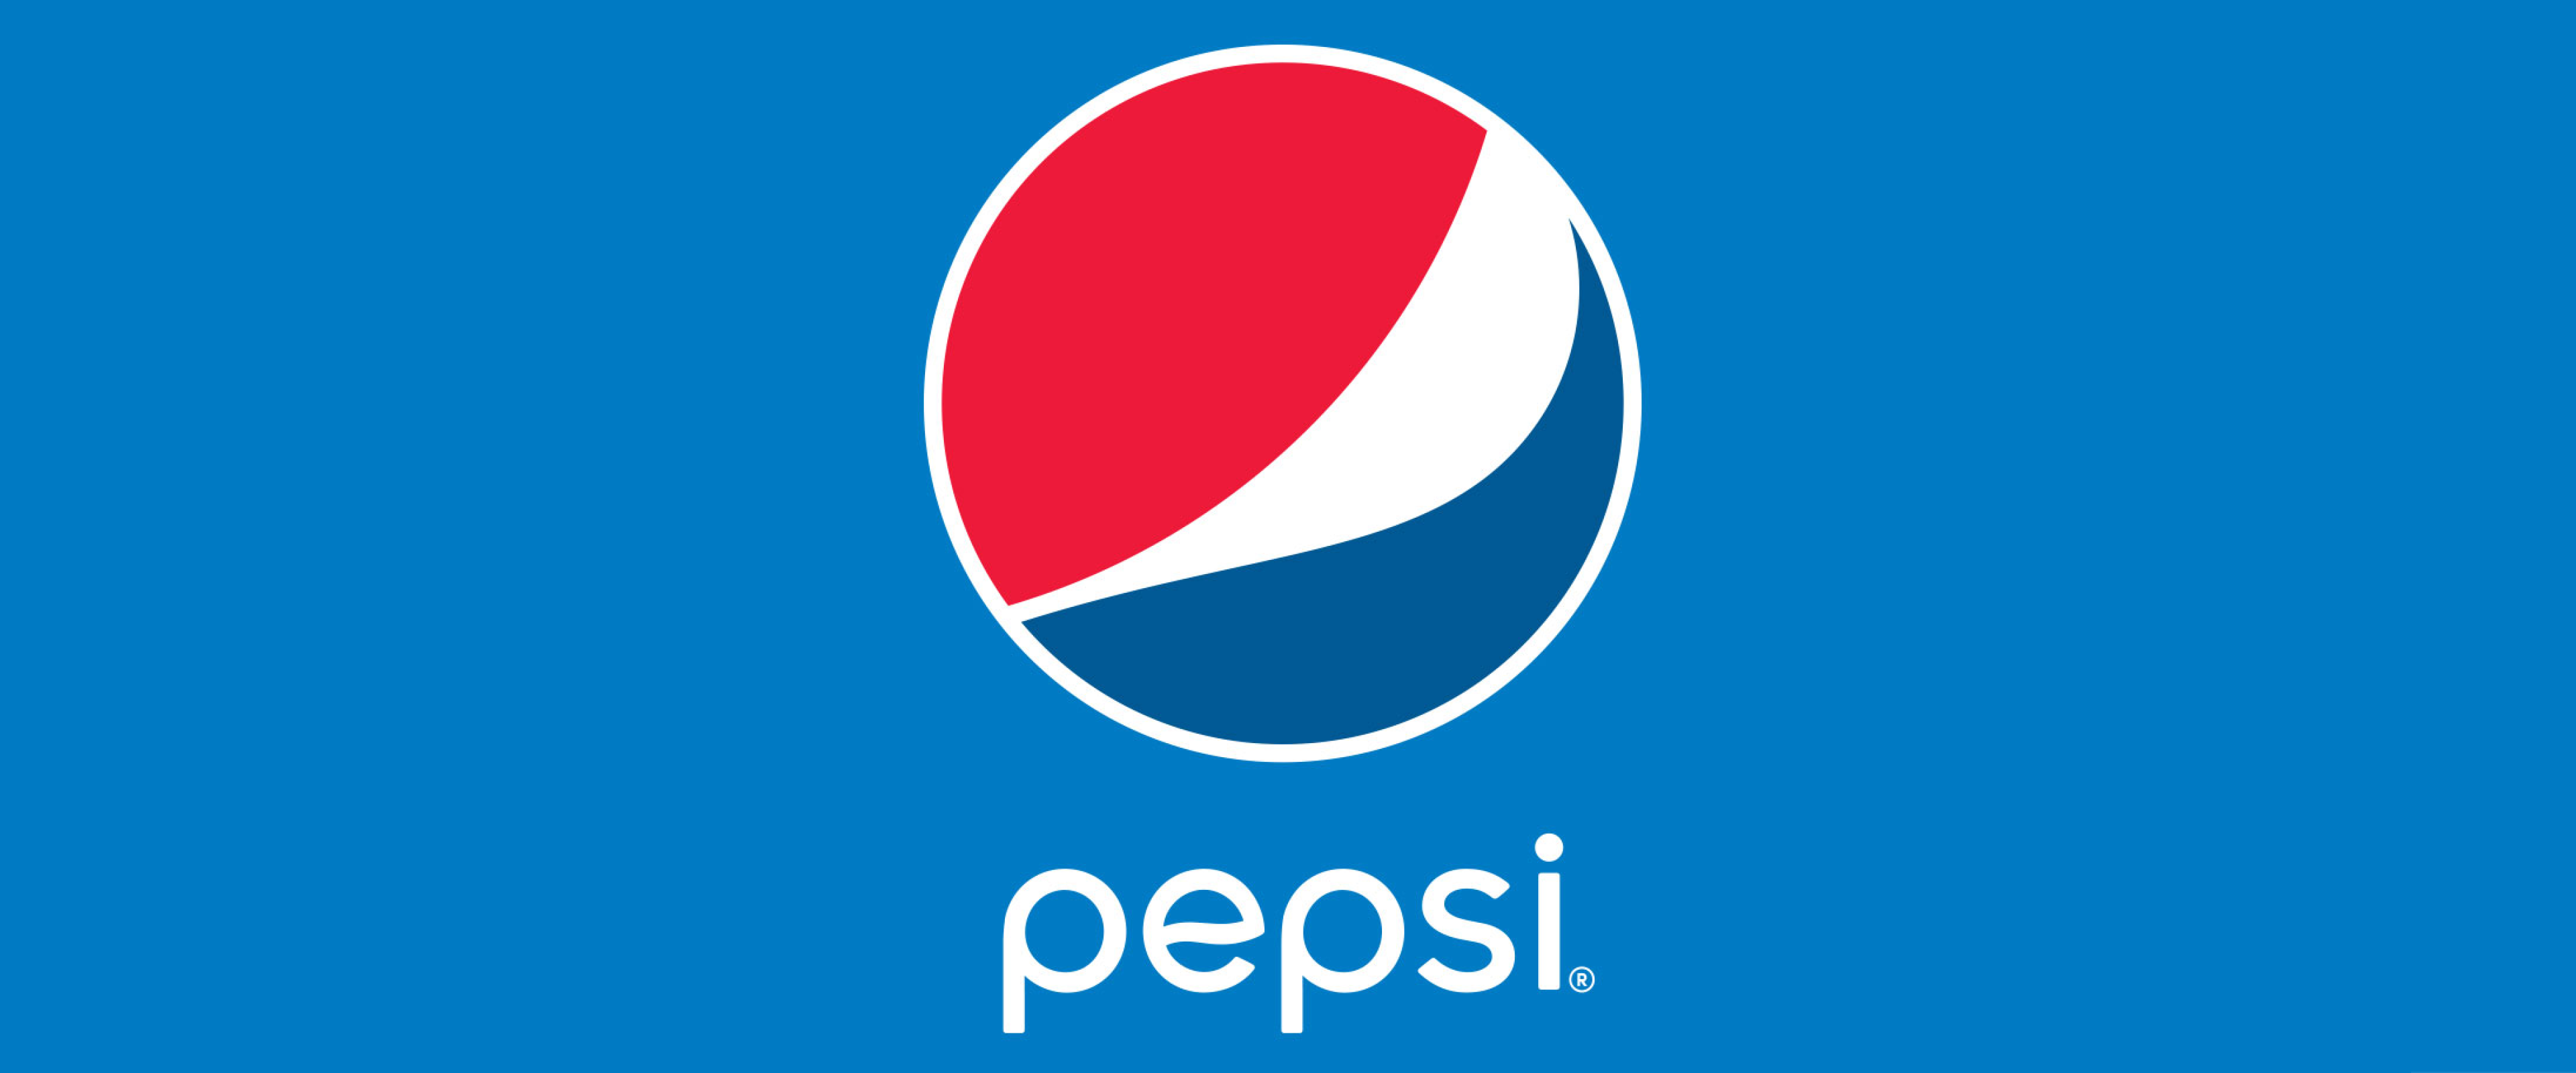 Pepsi logo on blue back ground